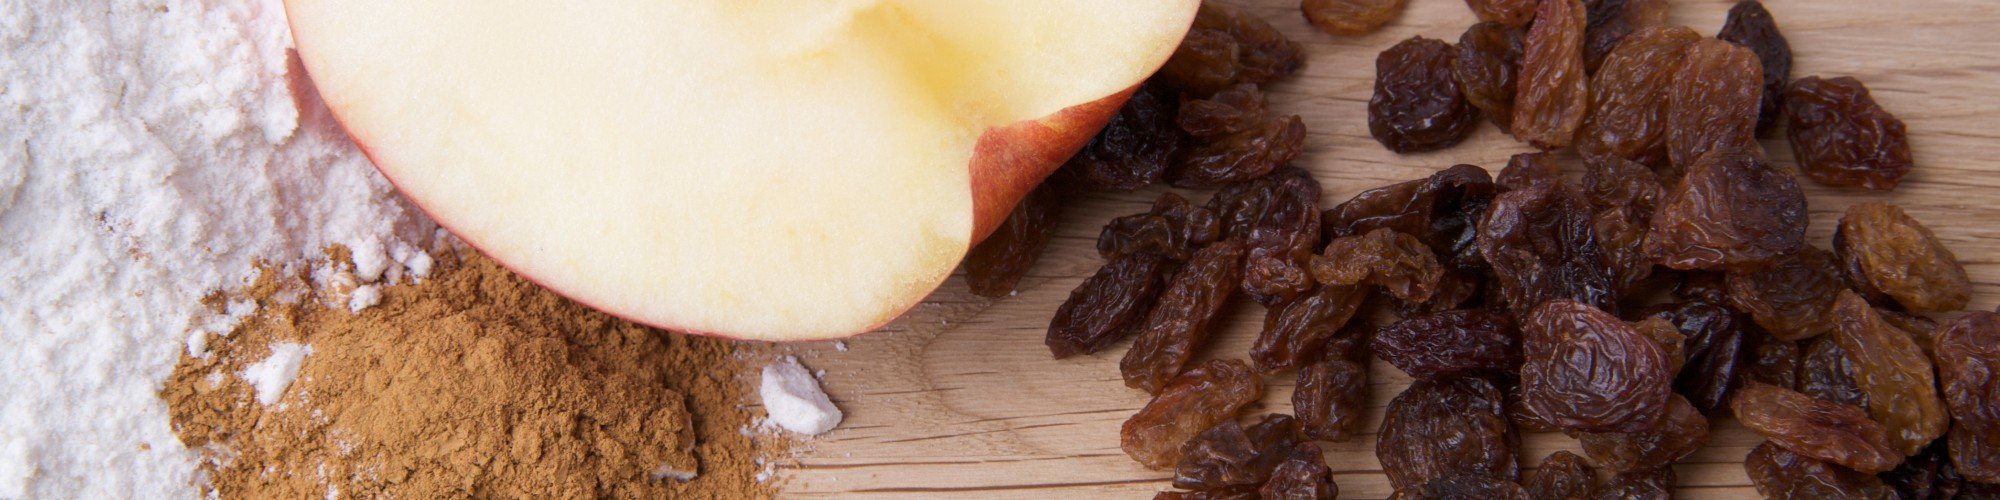 Apple Cinnamon Raisin Bar Recipe